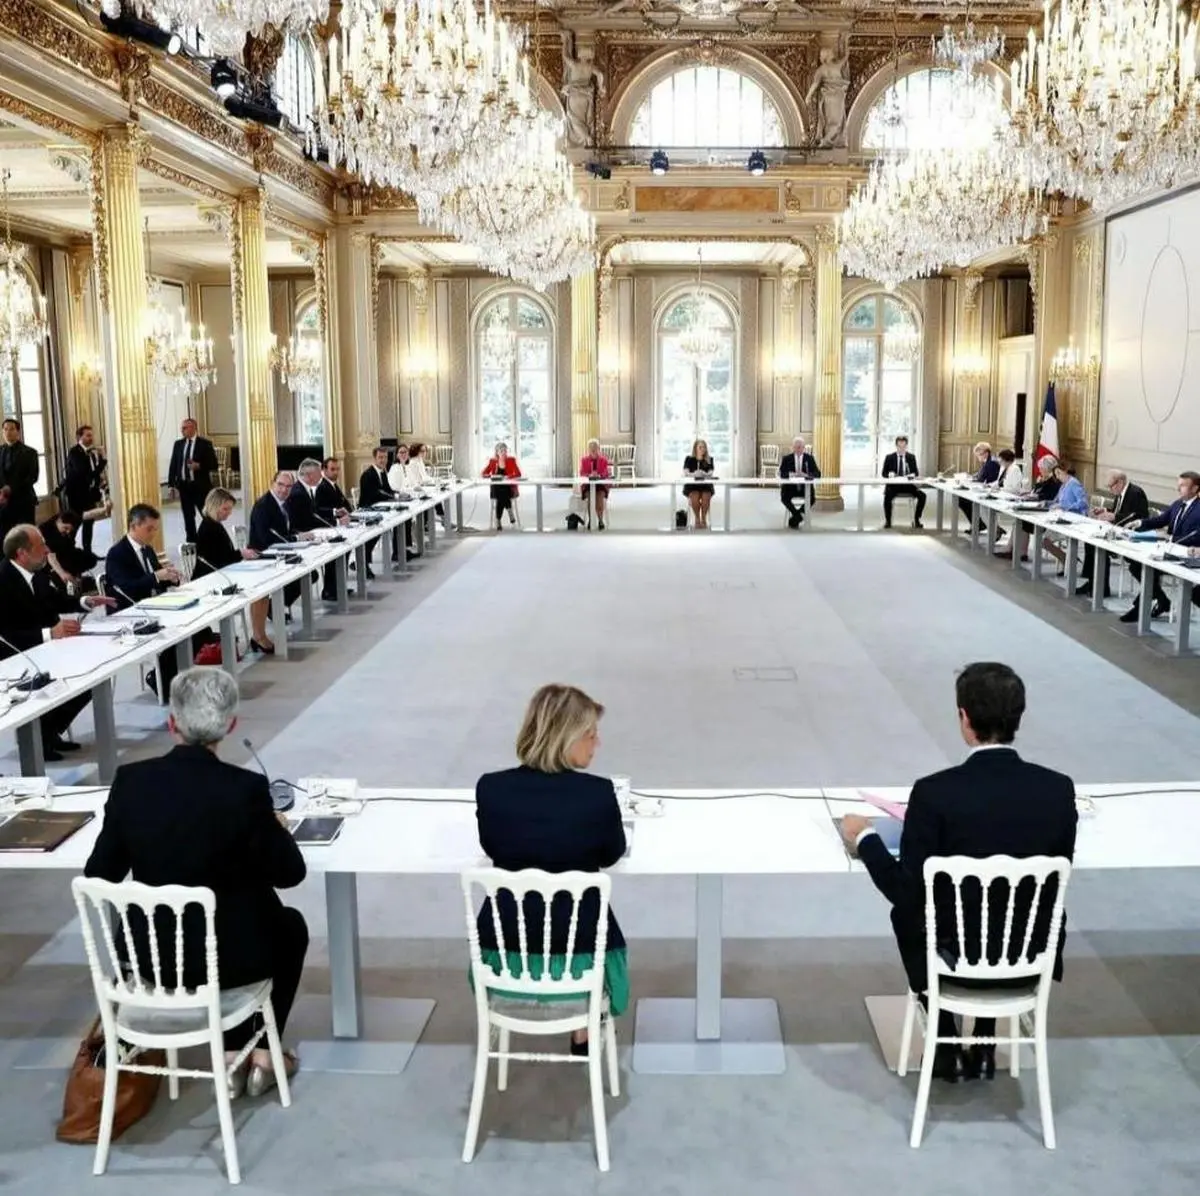 
تعداد زنان در دولت جدید فرانسه بیشتر از مردان است. + عکس
